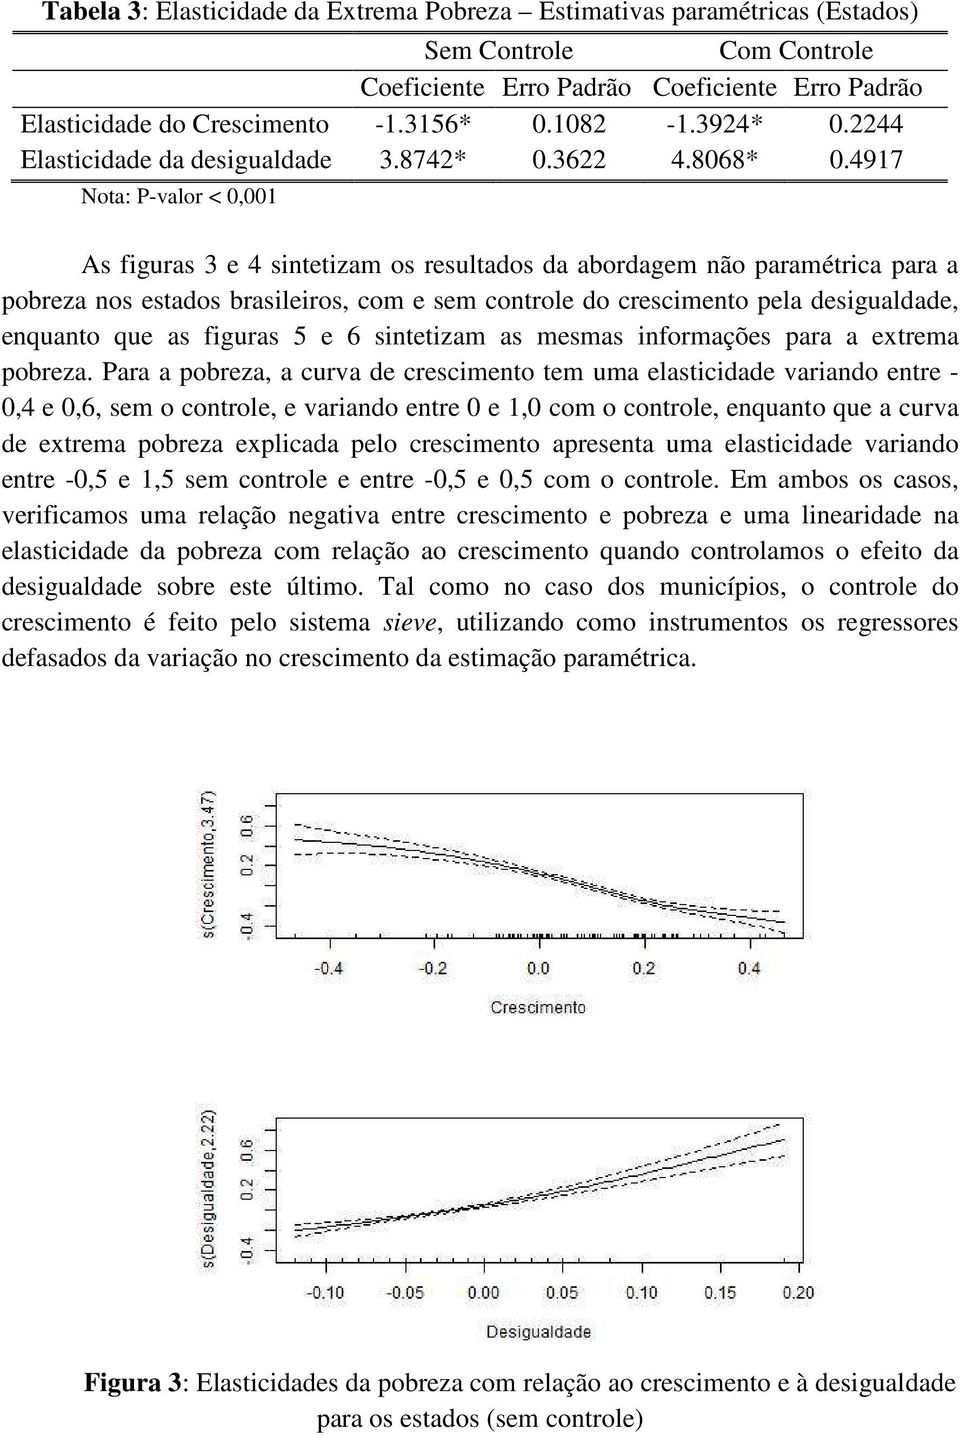 4917 Nota: P-valor < 0,001 As figuras 3 e 4 sintetizam os resultados da abordagem não paramétrica para a pobreza nos estados brasileiros, com e sem controle do crescimento pela desigualdade, enquanto